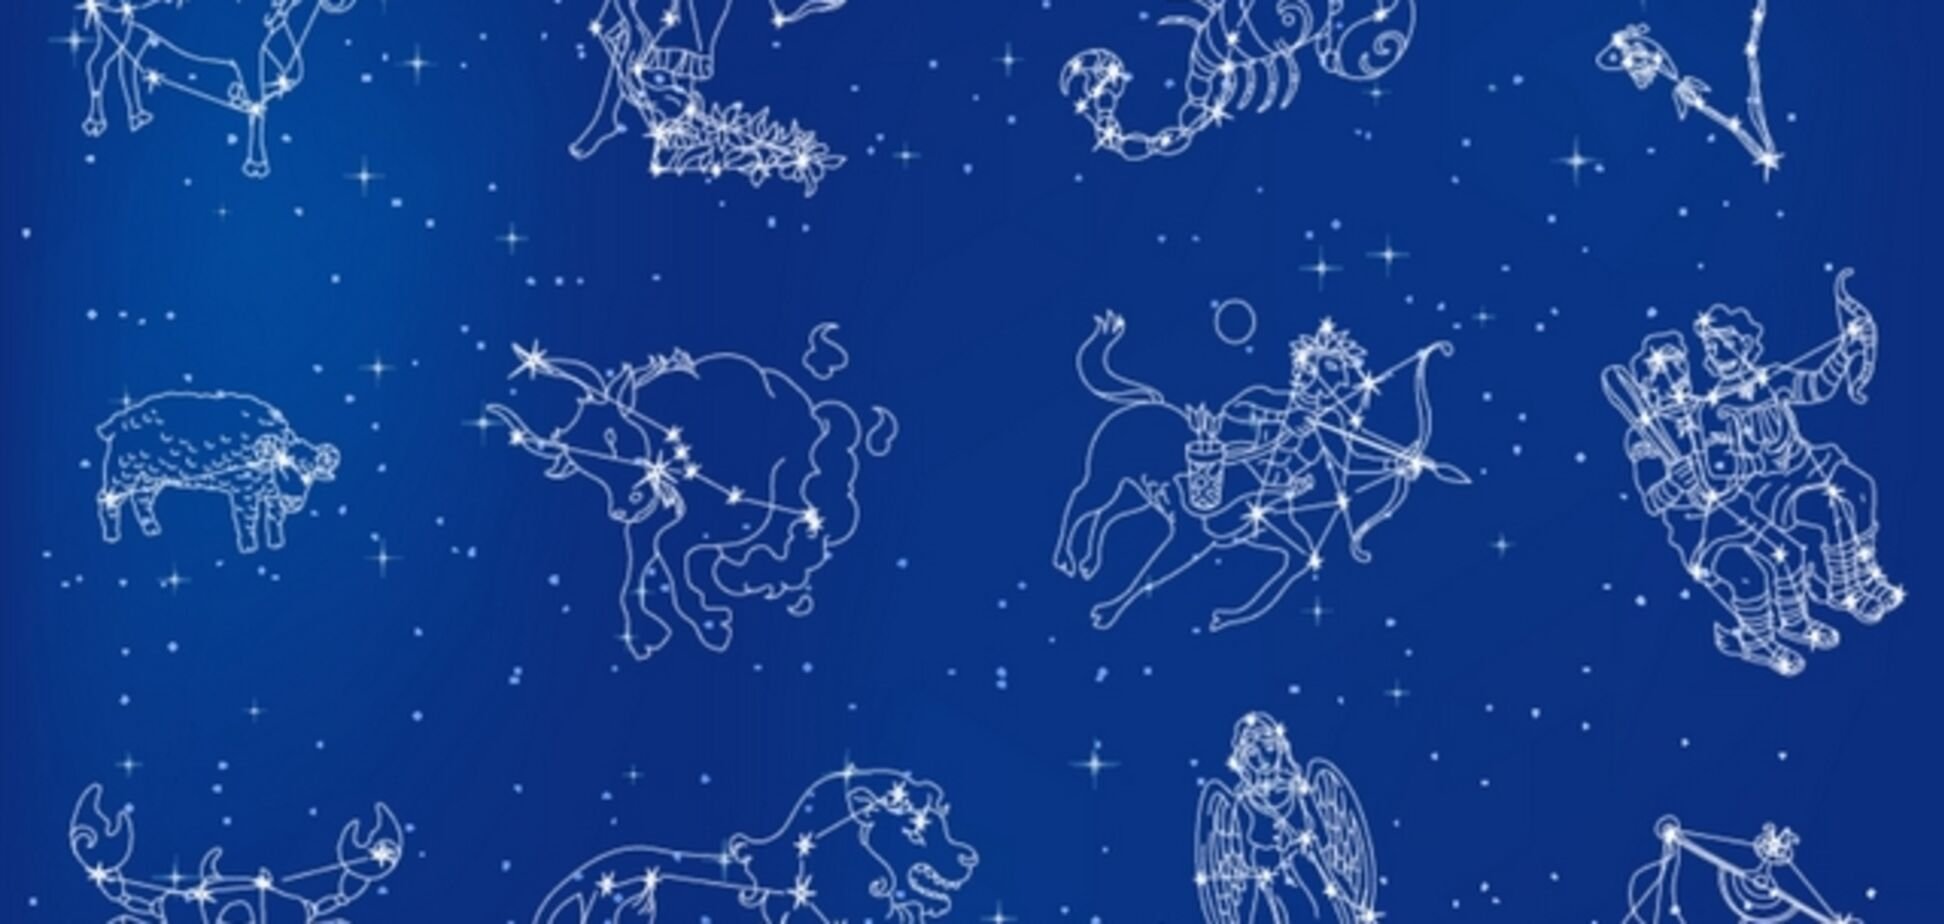 Цикл созвездий. Зодиакальные созвездия и знаки зодиака. Созвездия 12 знаков зодиака. Зодиакальные созвездия это созвездия. Созвездие зназнаков зодиака.